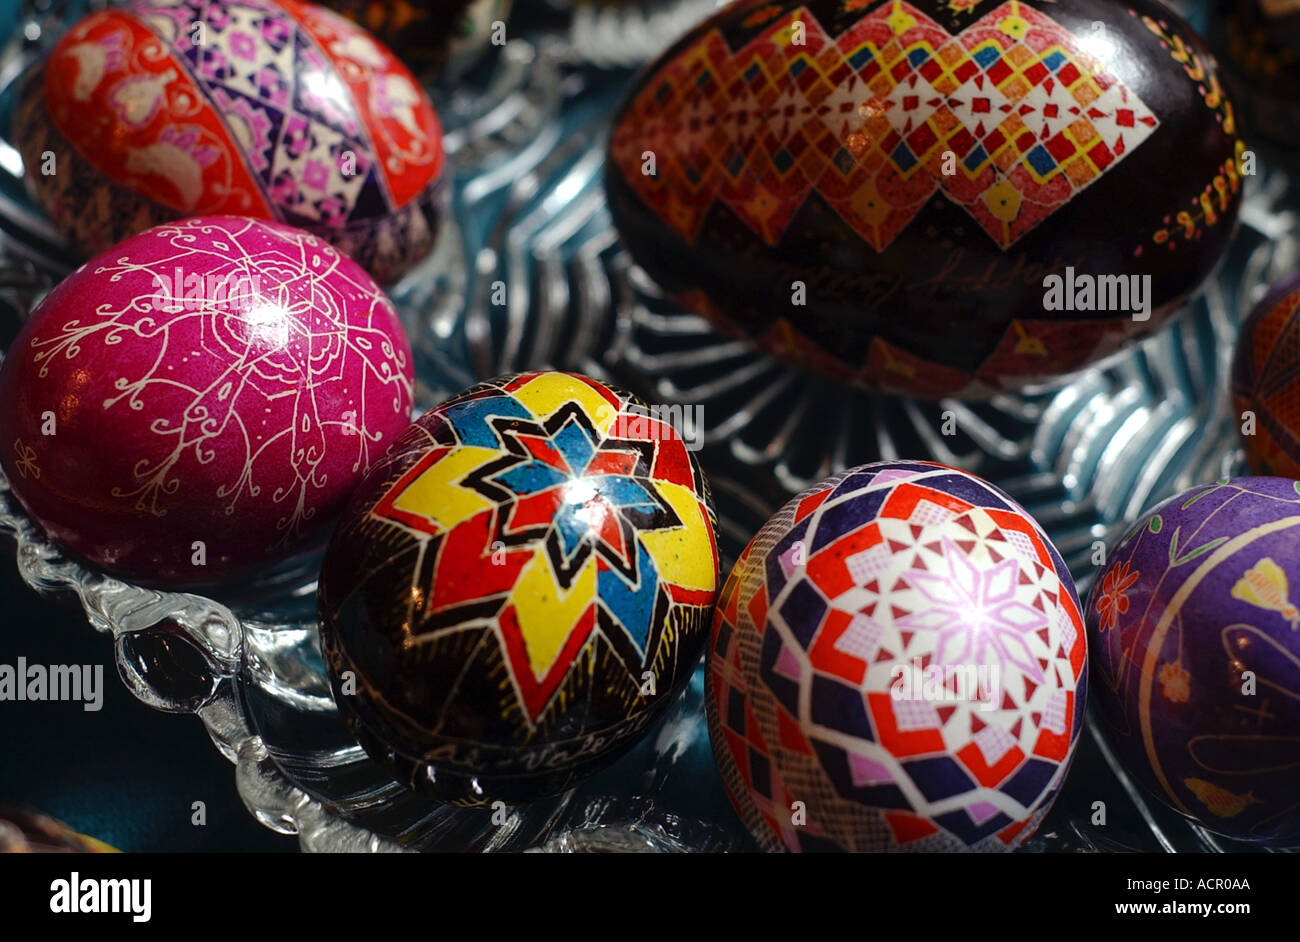 Ukrainische Pysanka Eiern Ostereier Stockfoto